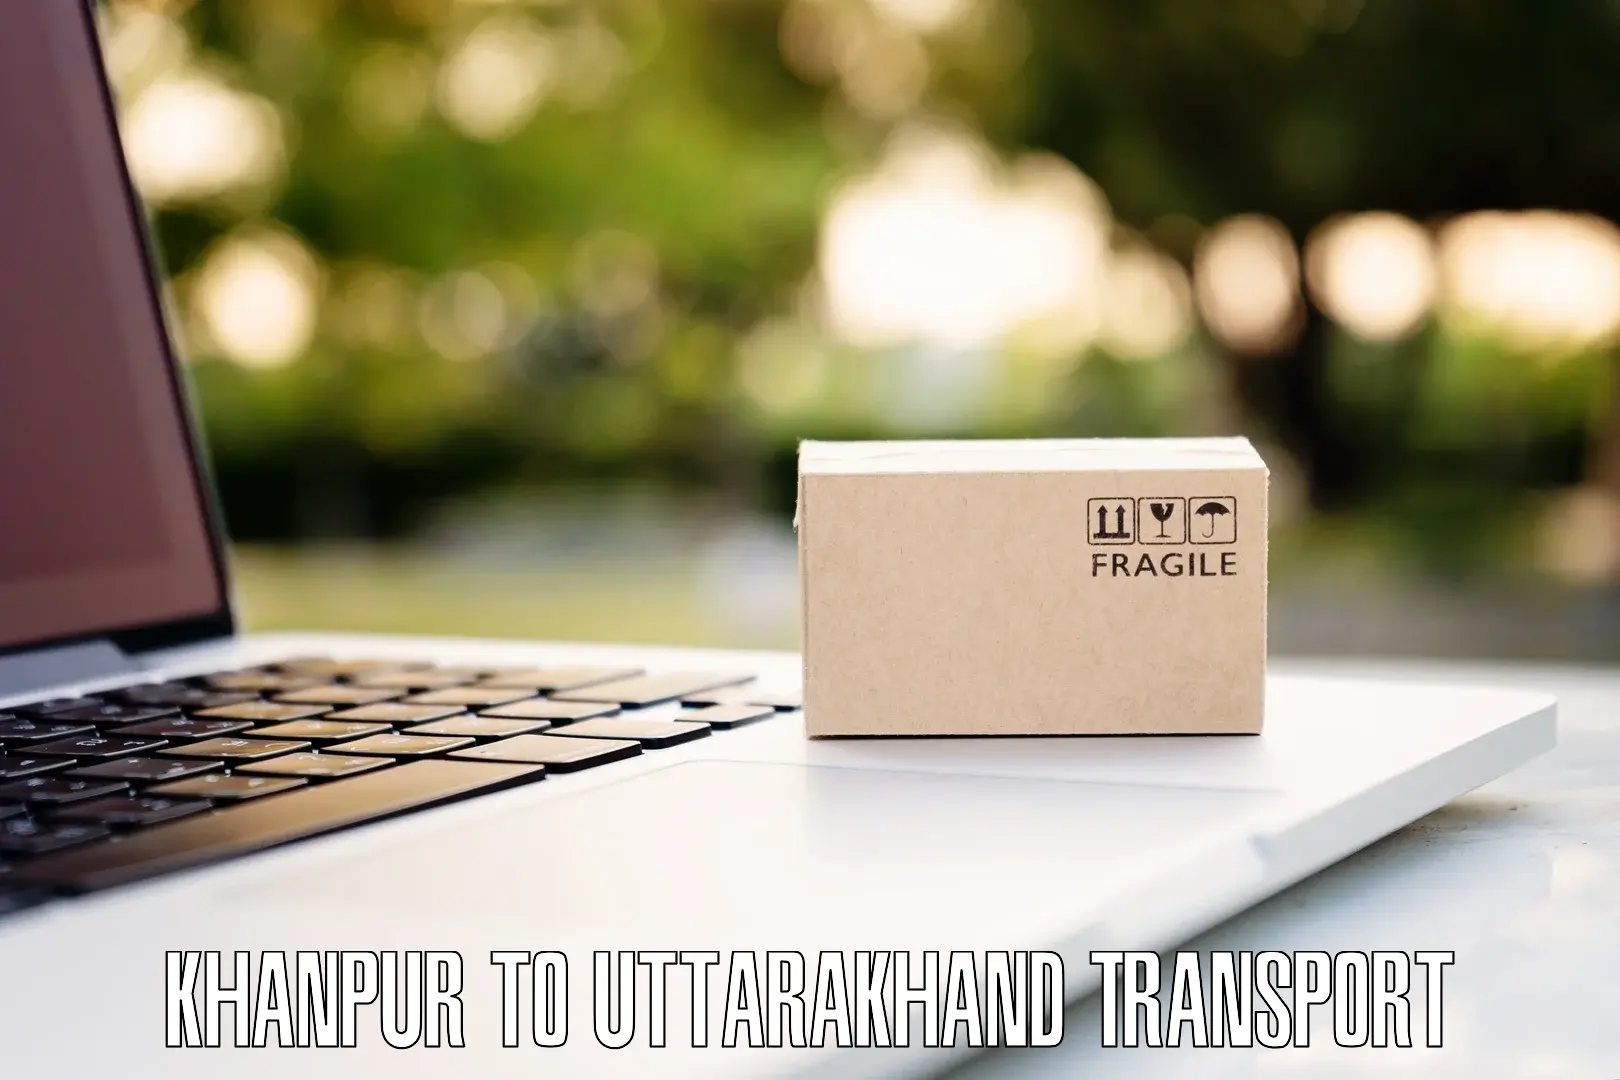 Transport shared services Khanpur to Uttarakhand